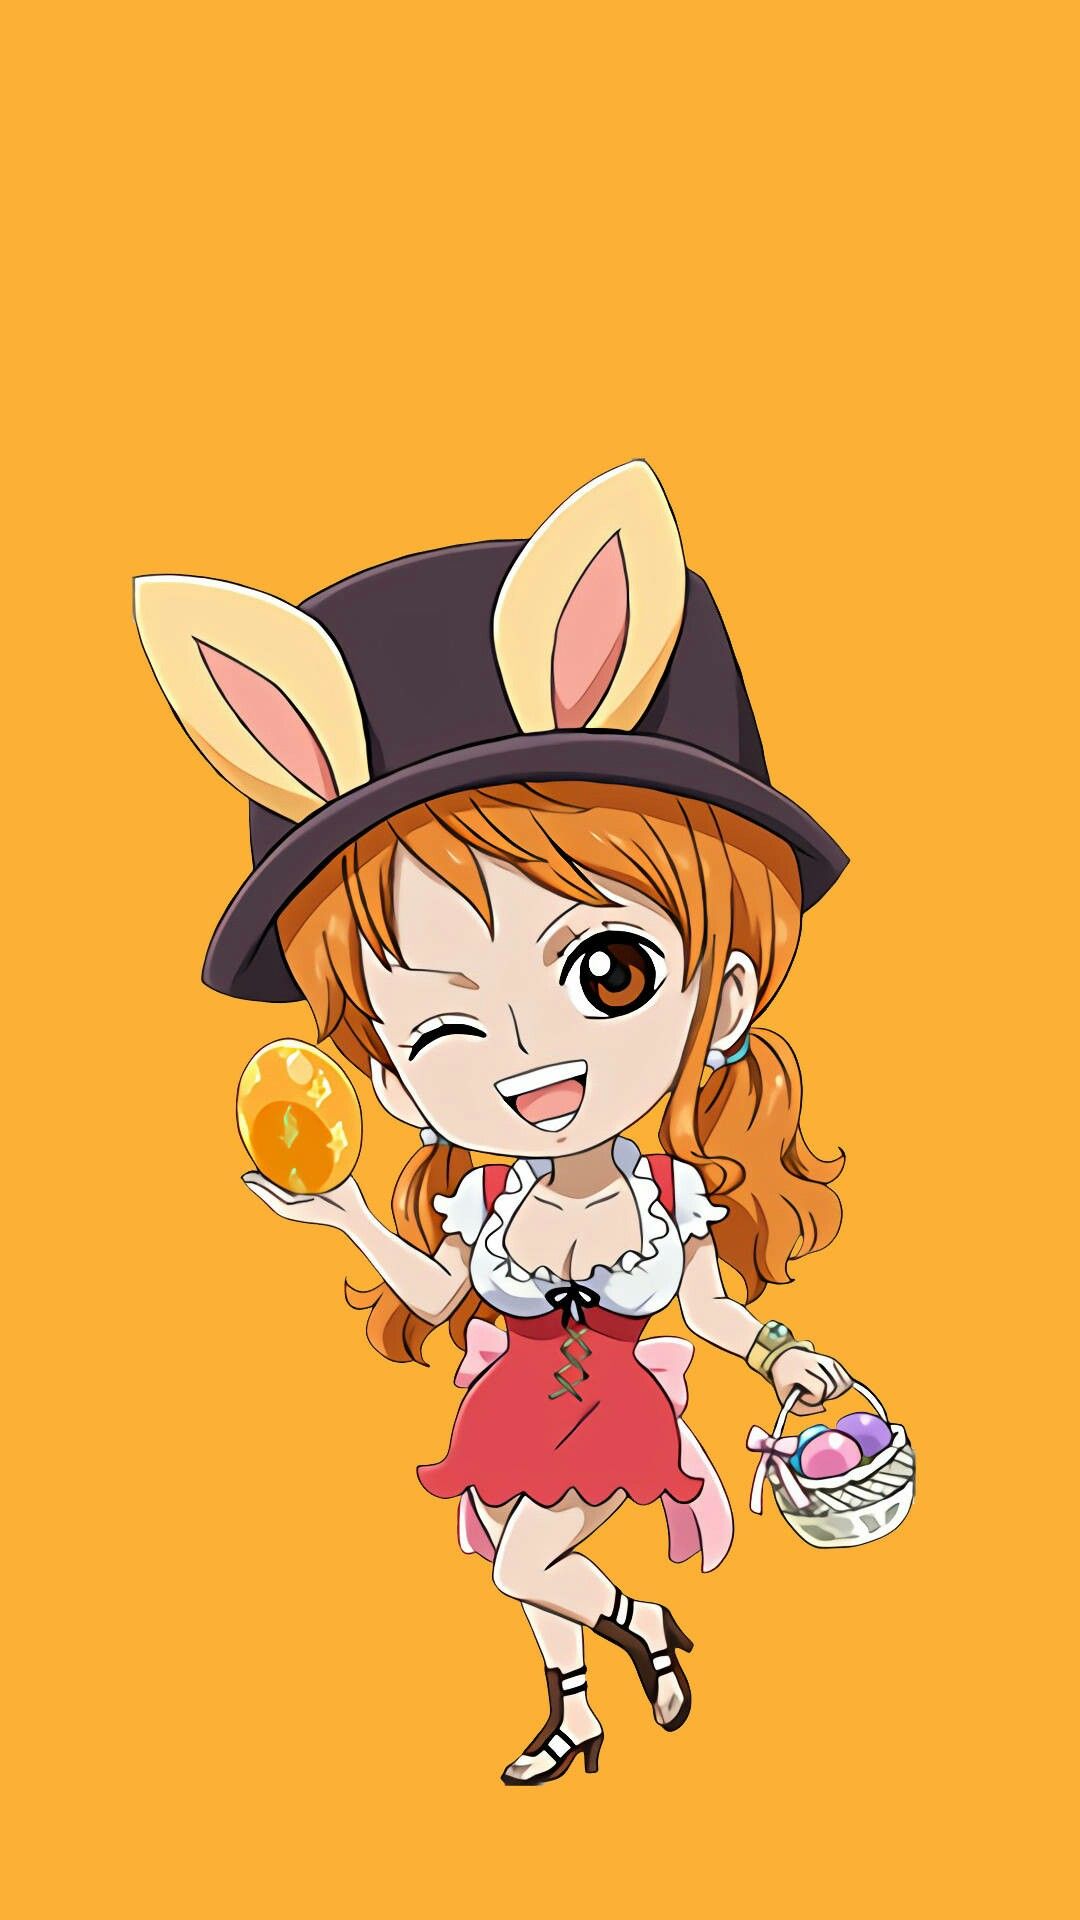 mô hình One Piece  mô hình One Piece chibi Có clip ảnh thật Fx Anime  Luffy Zoro Sanji Ace Sabo Nami Robin Choper  Lazadavn